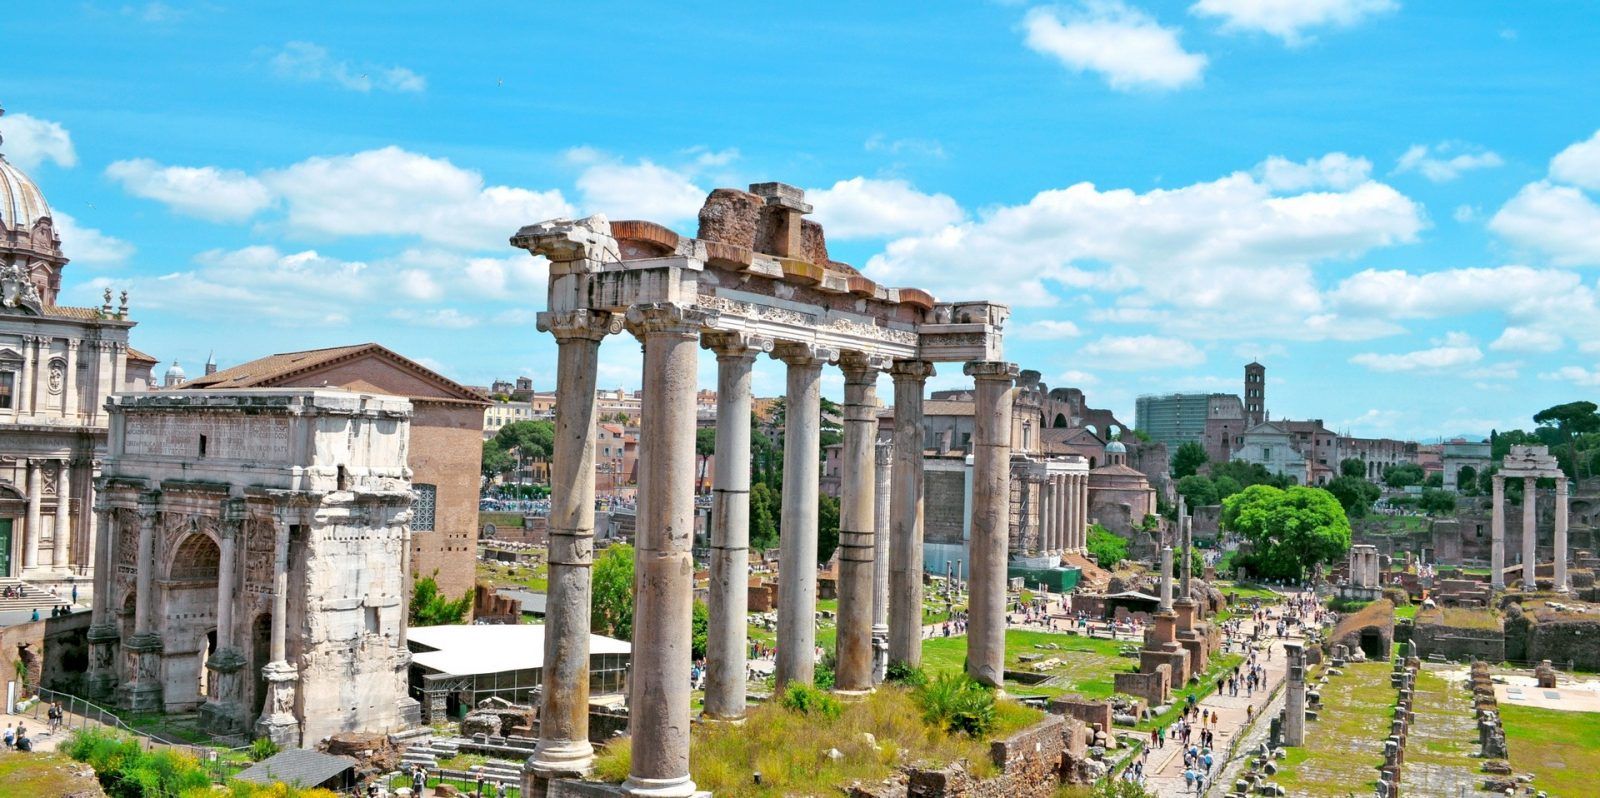 "Римский Форум — Форум в центре Древнего Рима, вместе с прилегающими зданиями. Первоначально на нём размещался рынок, позже он включил в себя комиций, курию, и приобрёл политические функции…